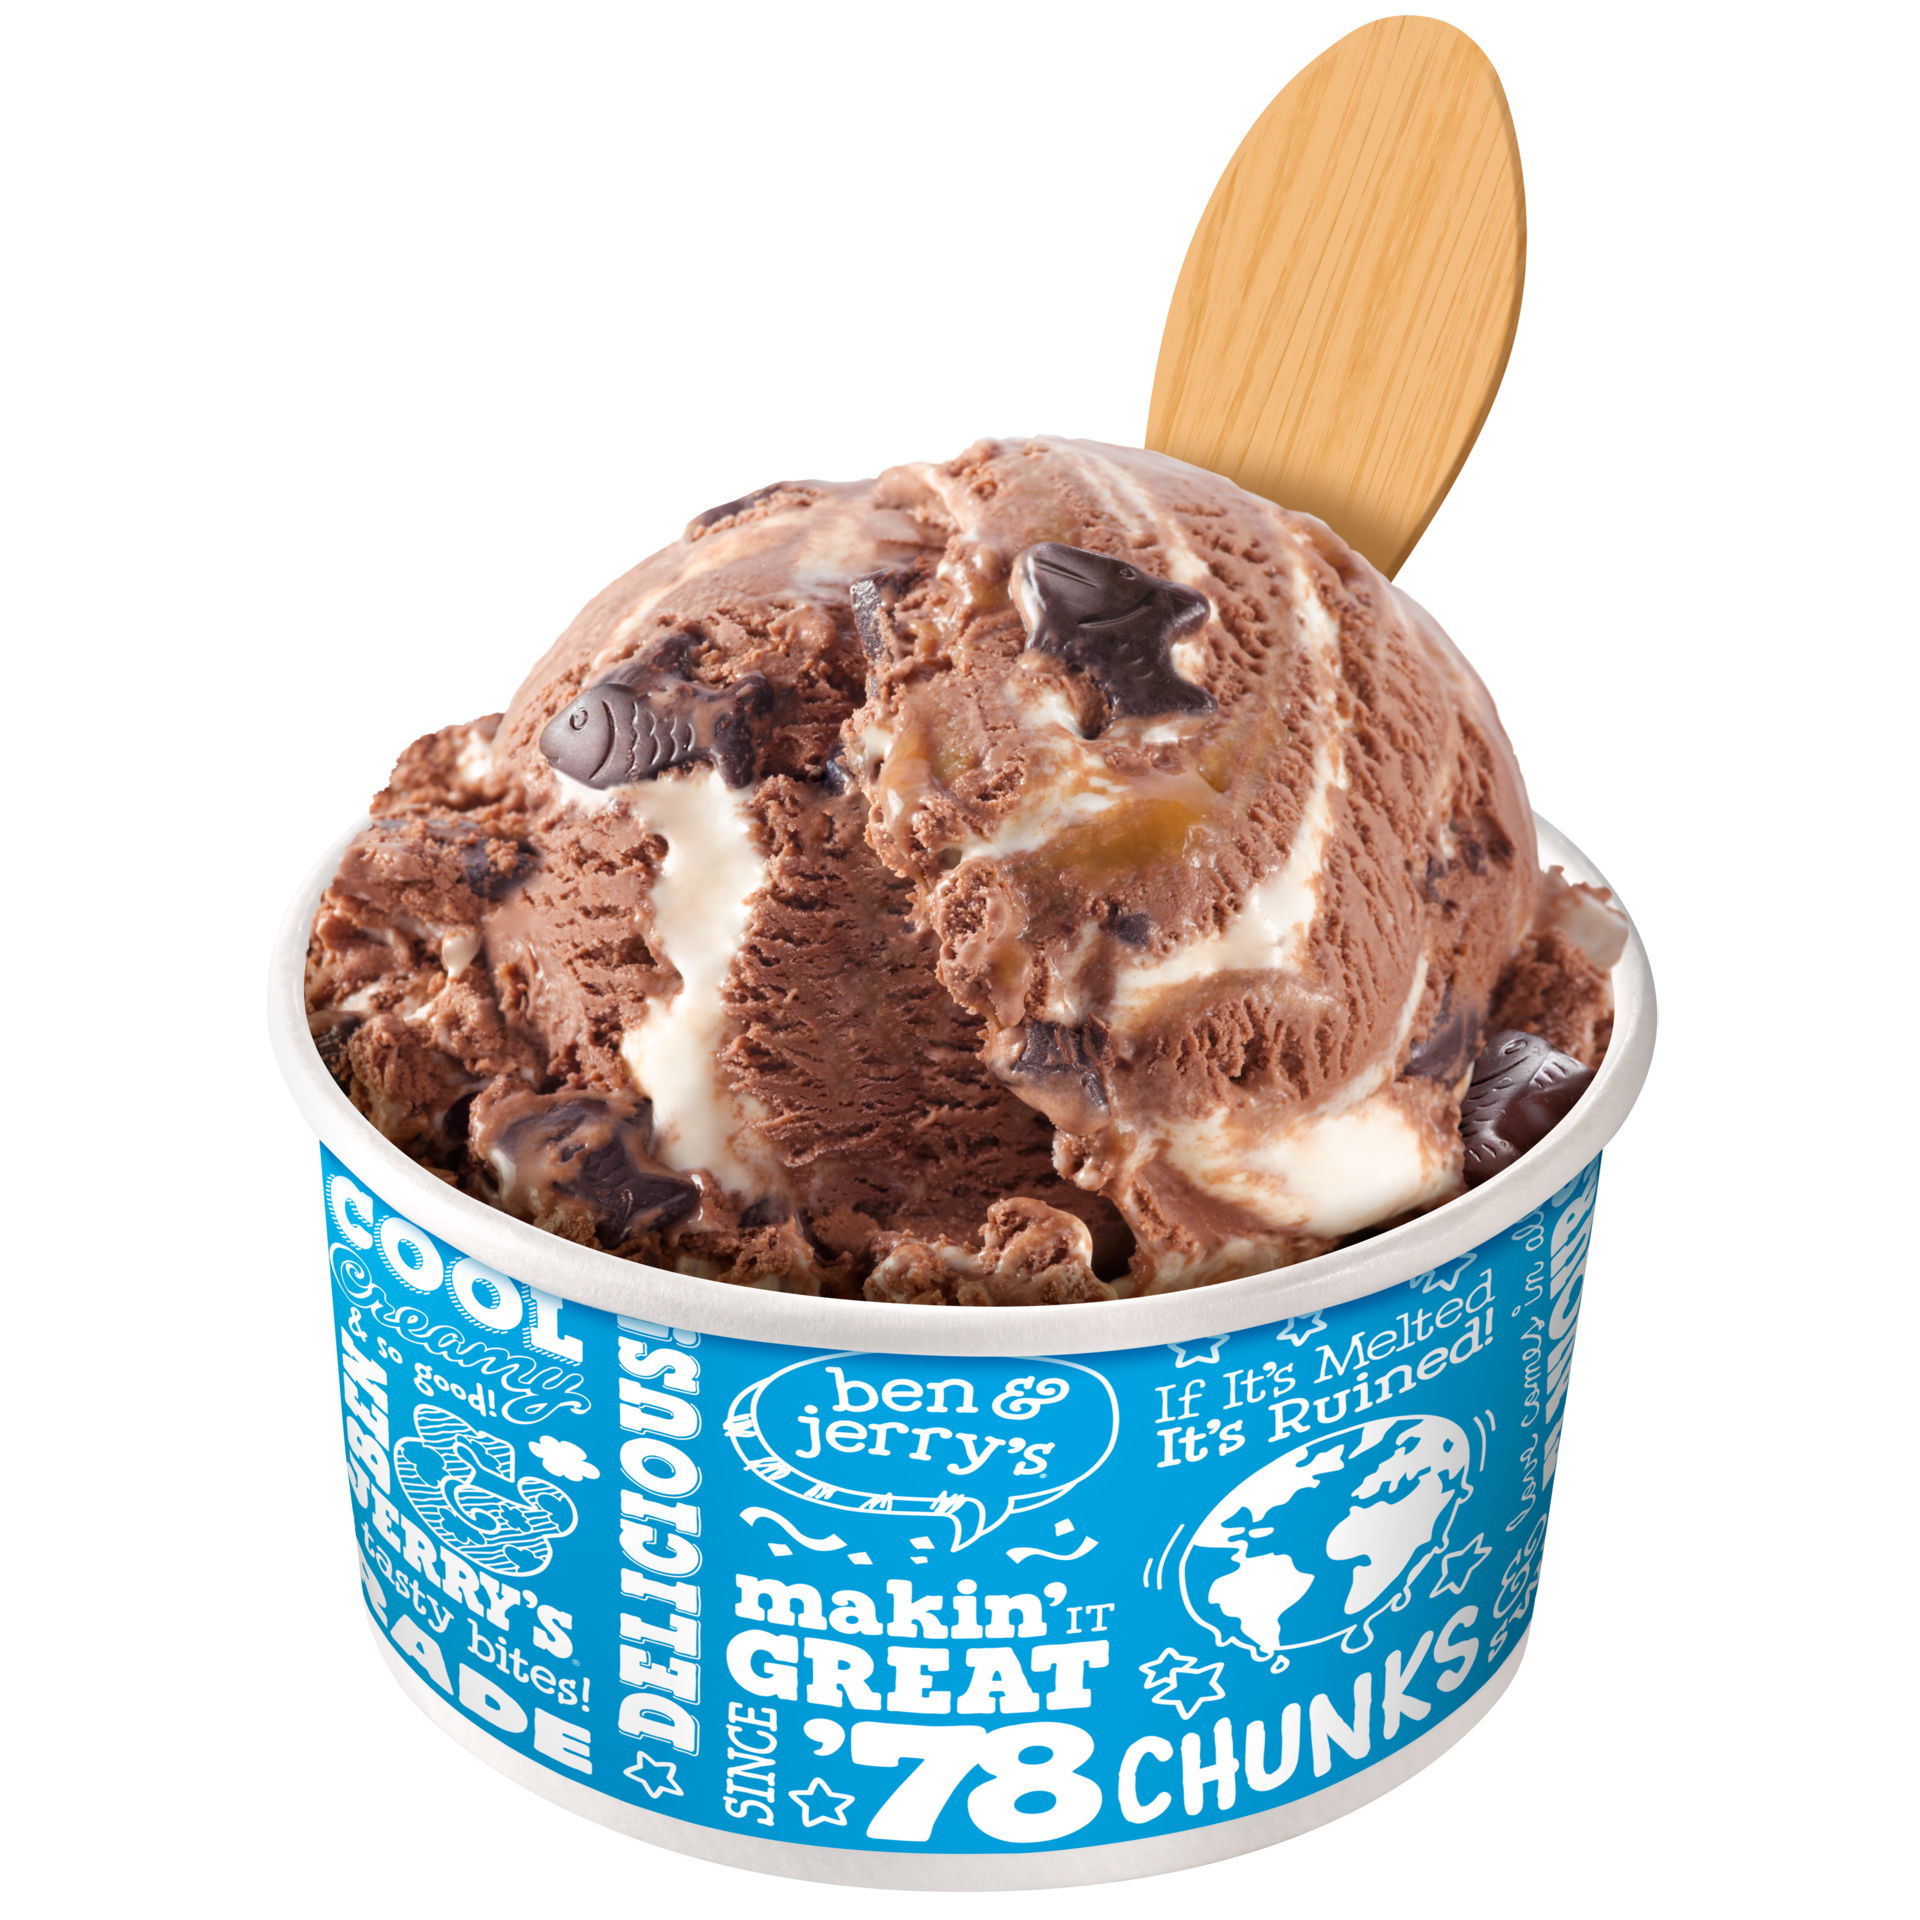 Phish Food® Original Ice Cream Scoop Shops